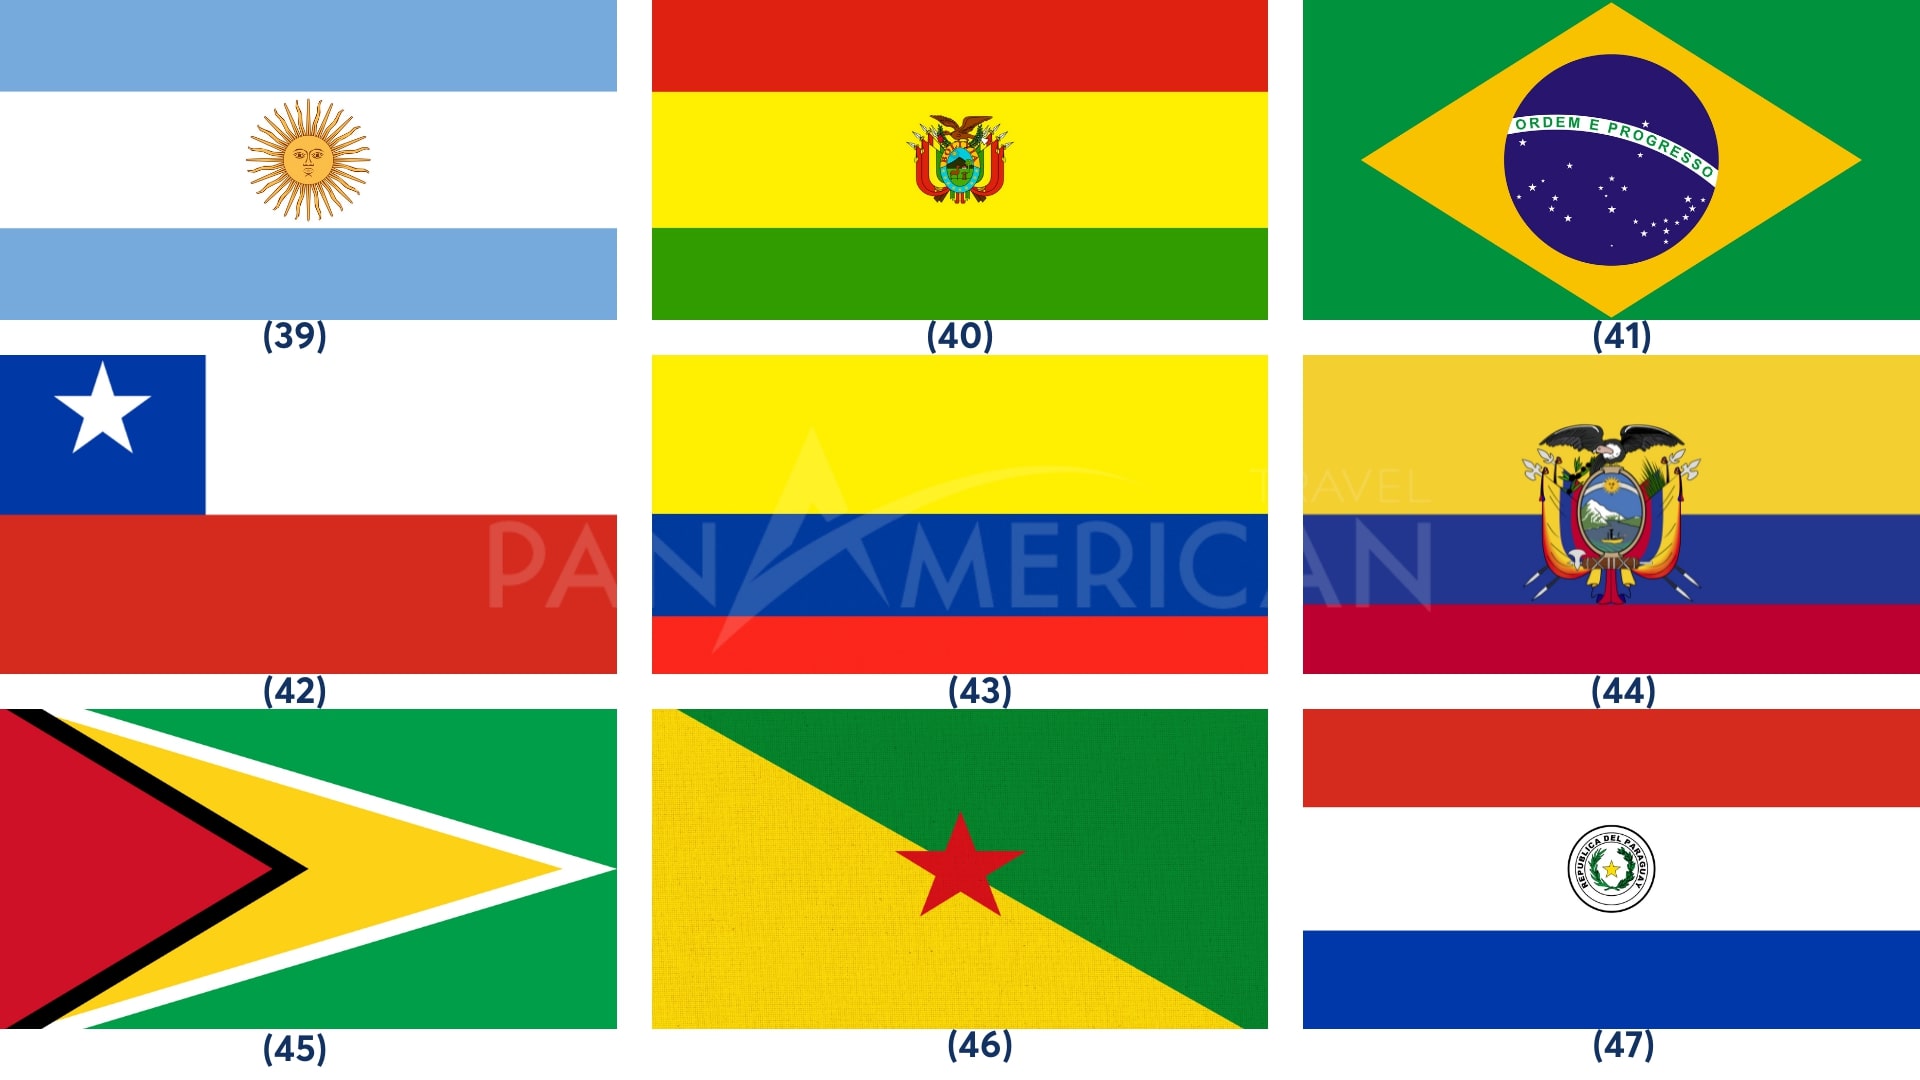 Quốc kỳ các nước Châu Mỹ: Hãy tìm hiểu về những quốc kỳ đầy sắc màu của Châu Mỹ! Từ Brazil tới Canada, mỗi quốc gia lại có một quốc kỳ độc đáo. Để kích thích sự tò mò của bạn, hãy xem hình ảnh về các quốc kỳ này, tìm hiểu thêm về lịch sử và ý nghĩa của chúng.